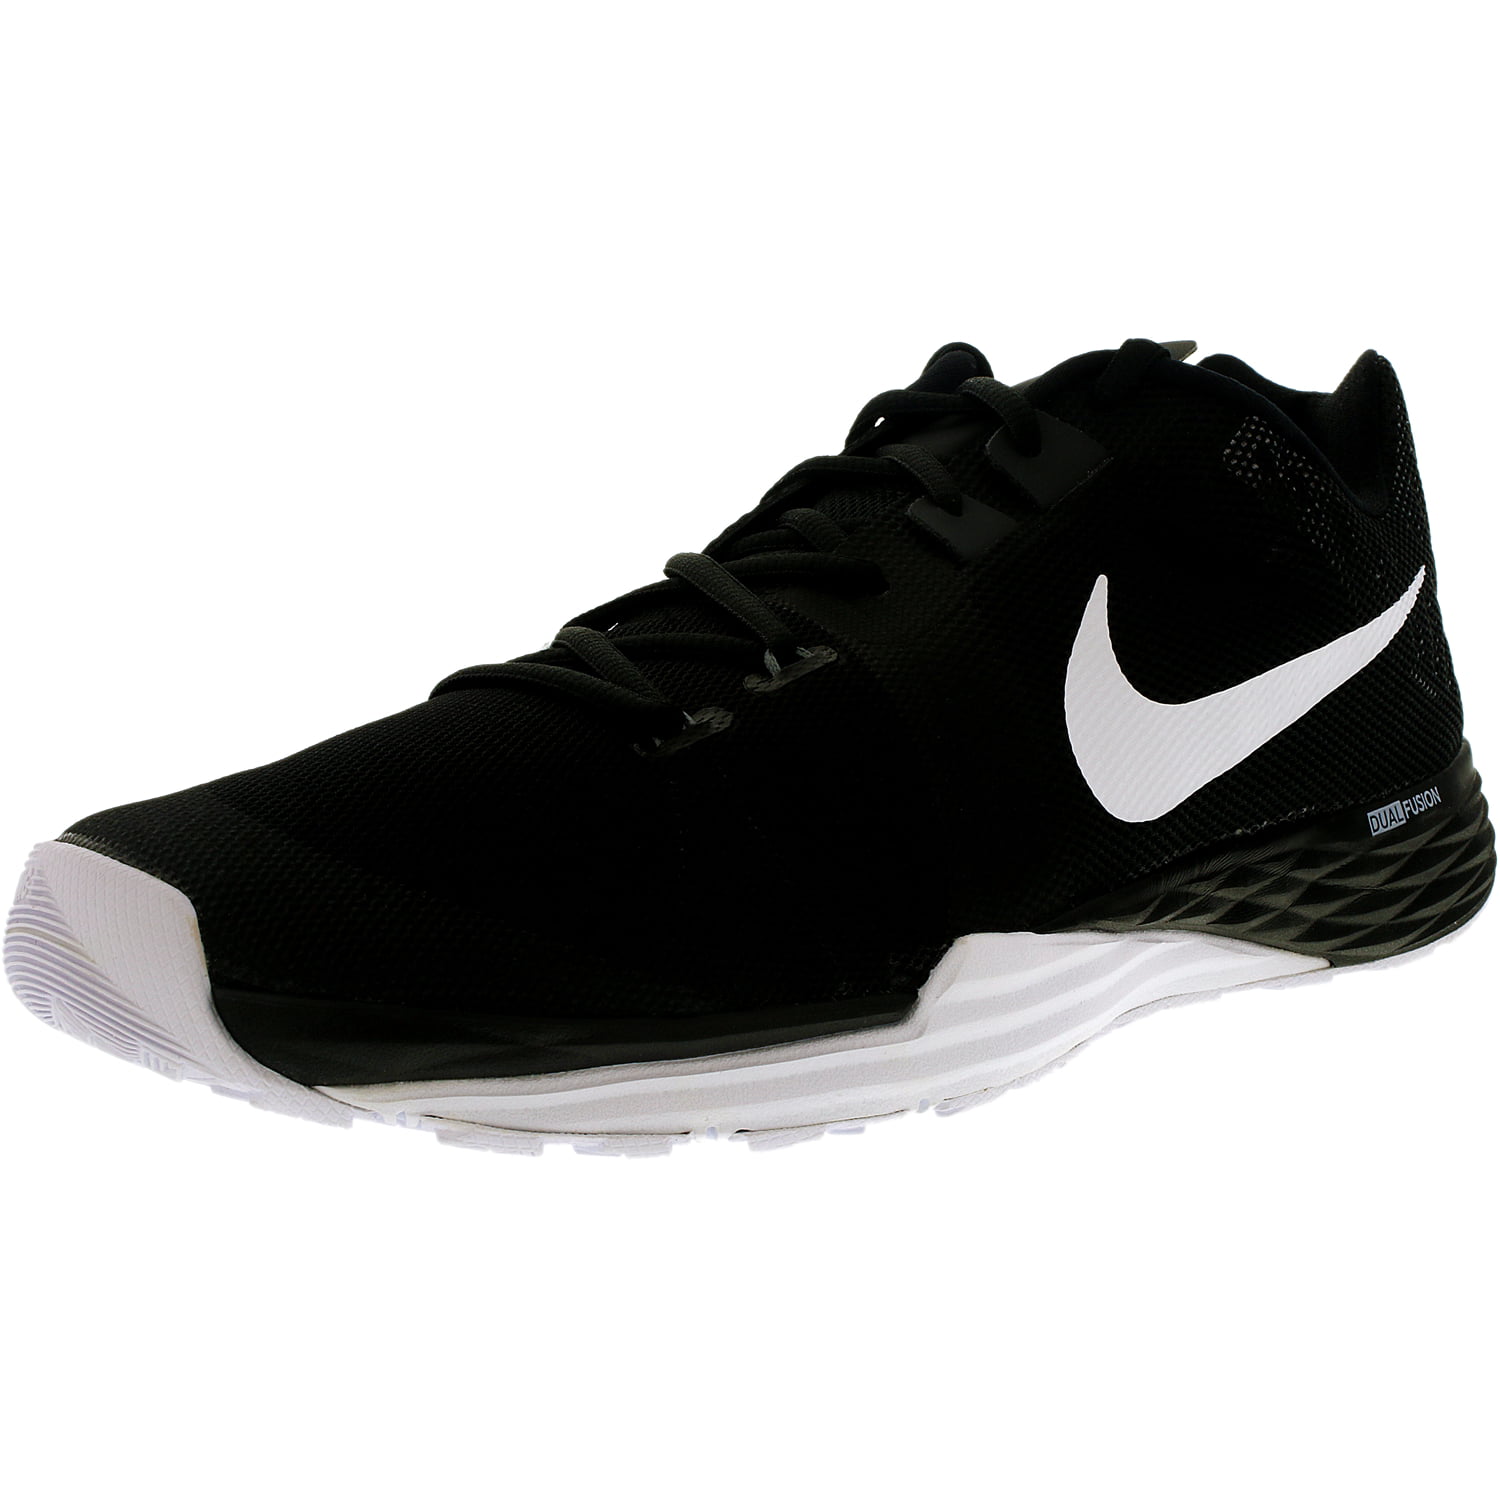 Nike Train Prime Iron DF Men's Shoes Black/White/Anthracite/Grey 832219 ...